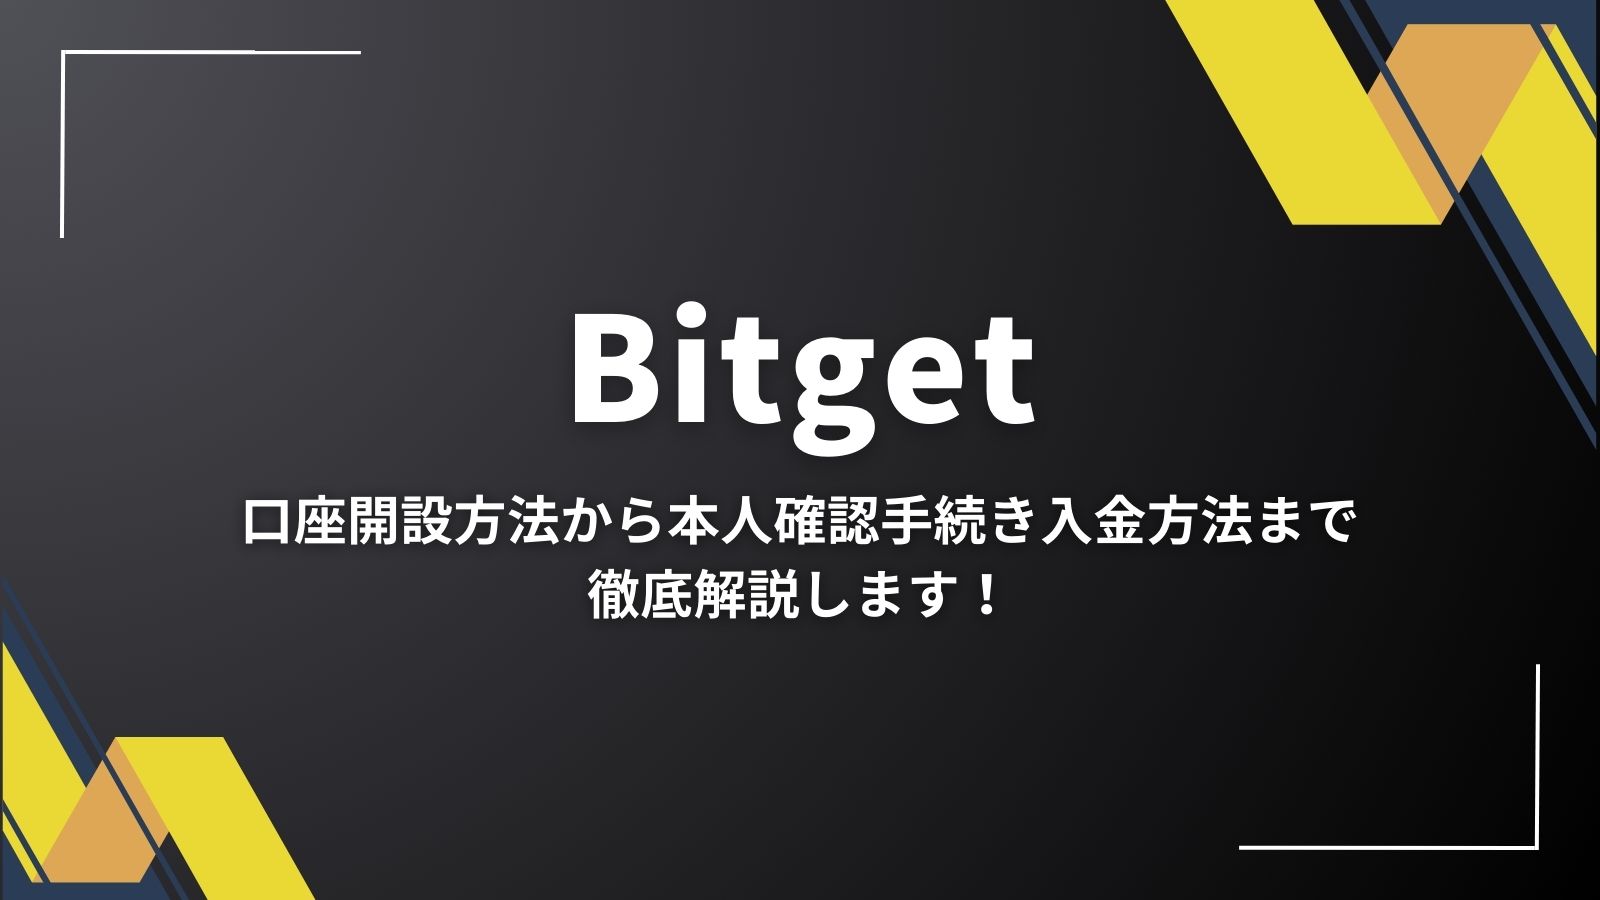 Bitget（ビットゲット）の口座開設から入金まで！手続き方法をご紹介します。